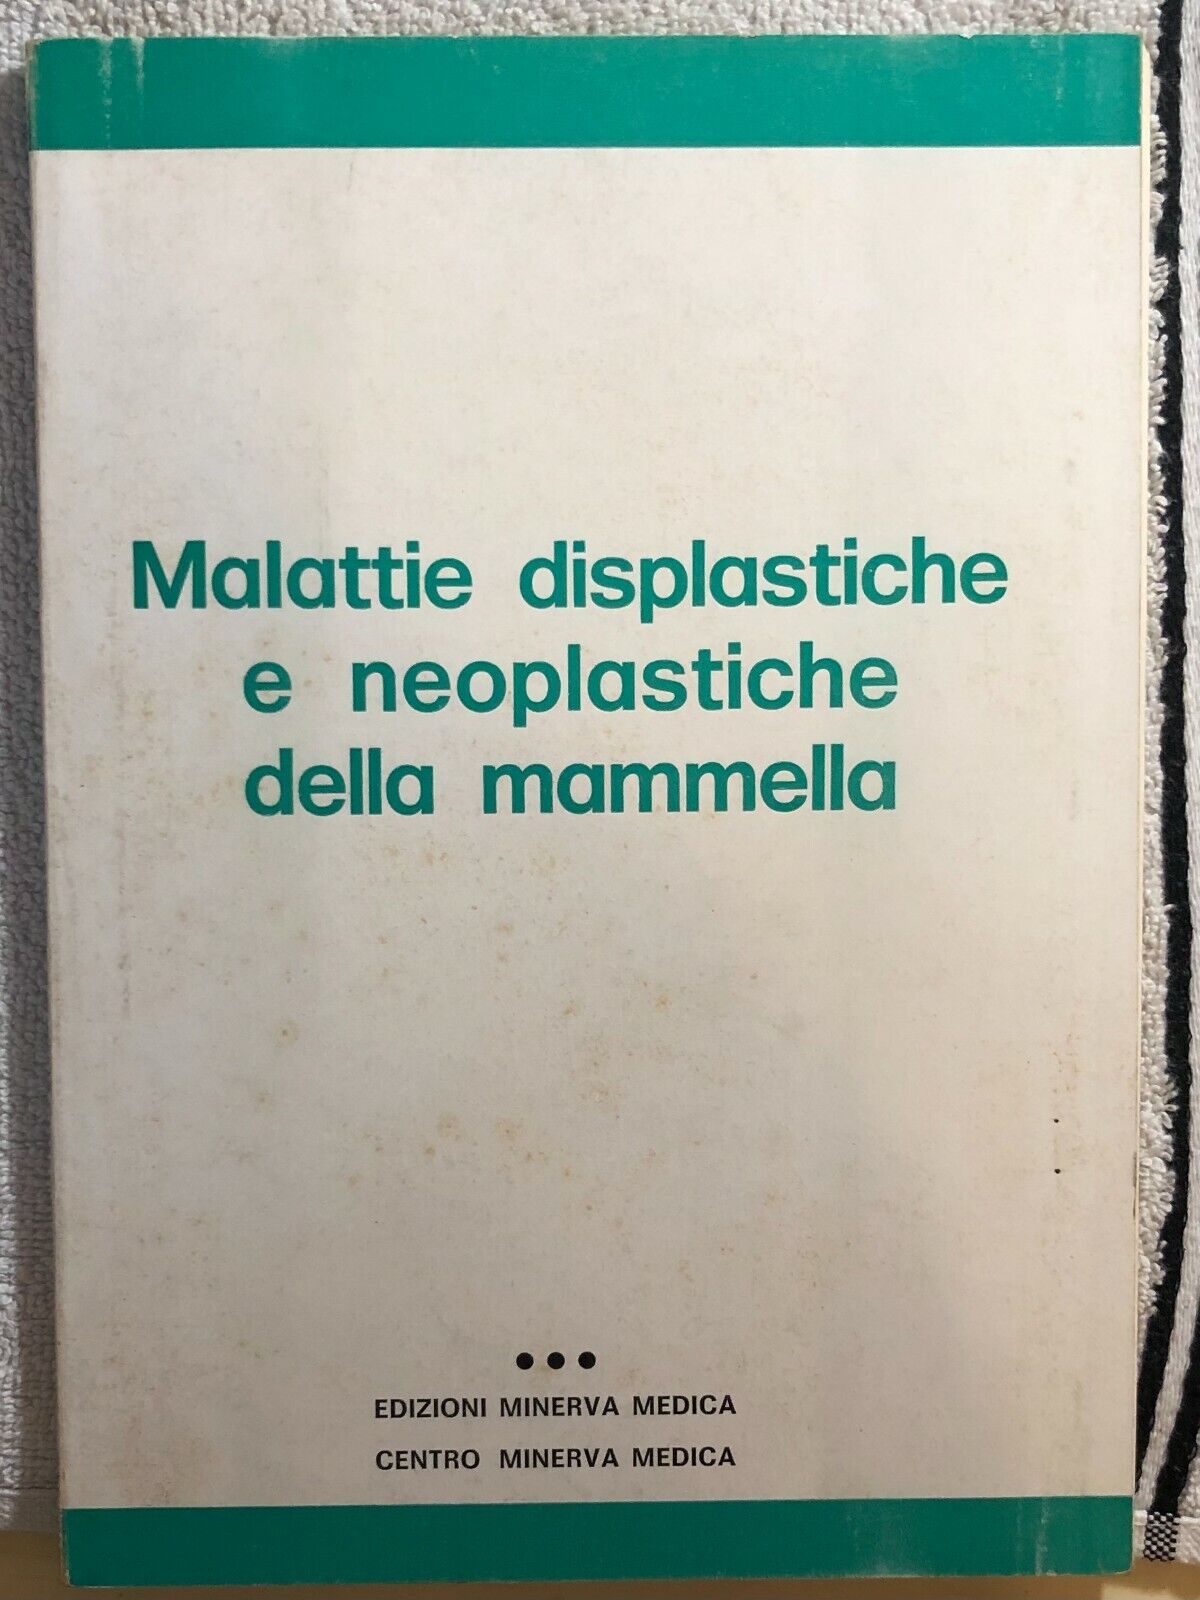 Malattie displastiche e neoplatische della mammella di Aa.vv.,  1974,  Edizioni 